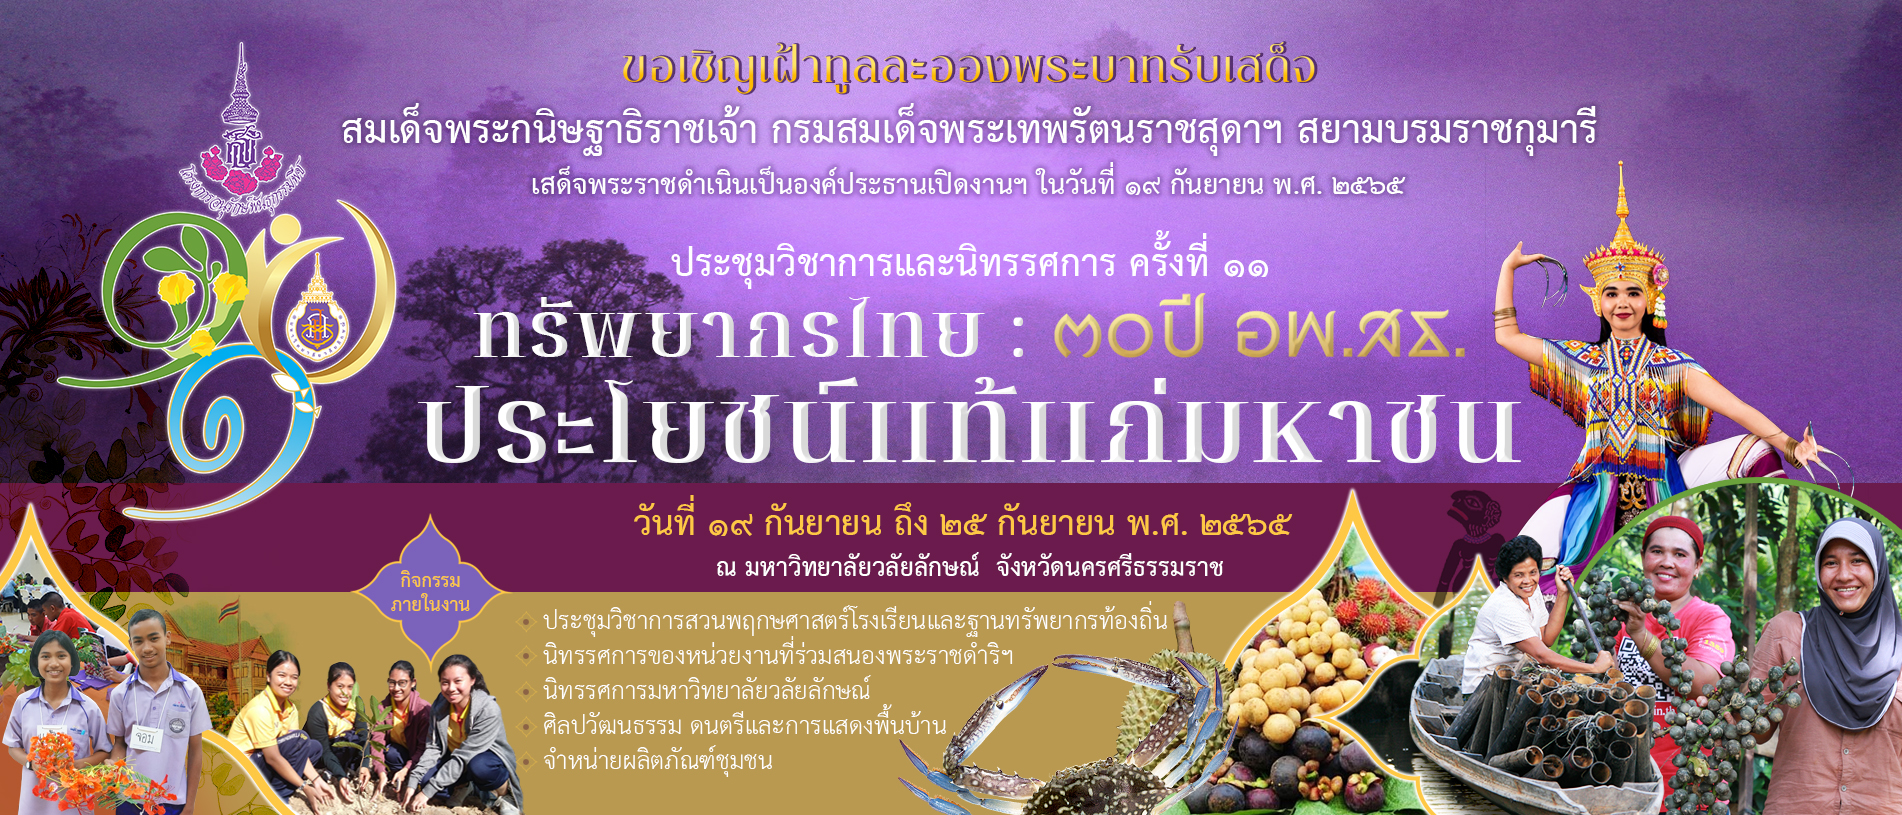 ประชุมวิชาการและนิทรรศการ ครั้งที่ 11 ทรัพยากรไทย 30ปี อพ.สธ. ประโยชน์แท้แก่มหาชน